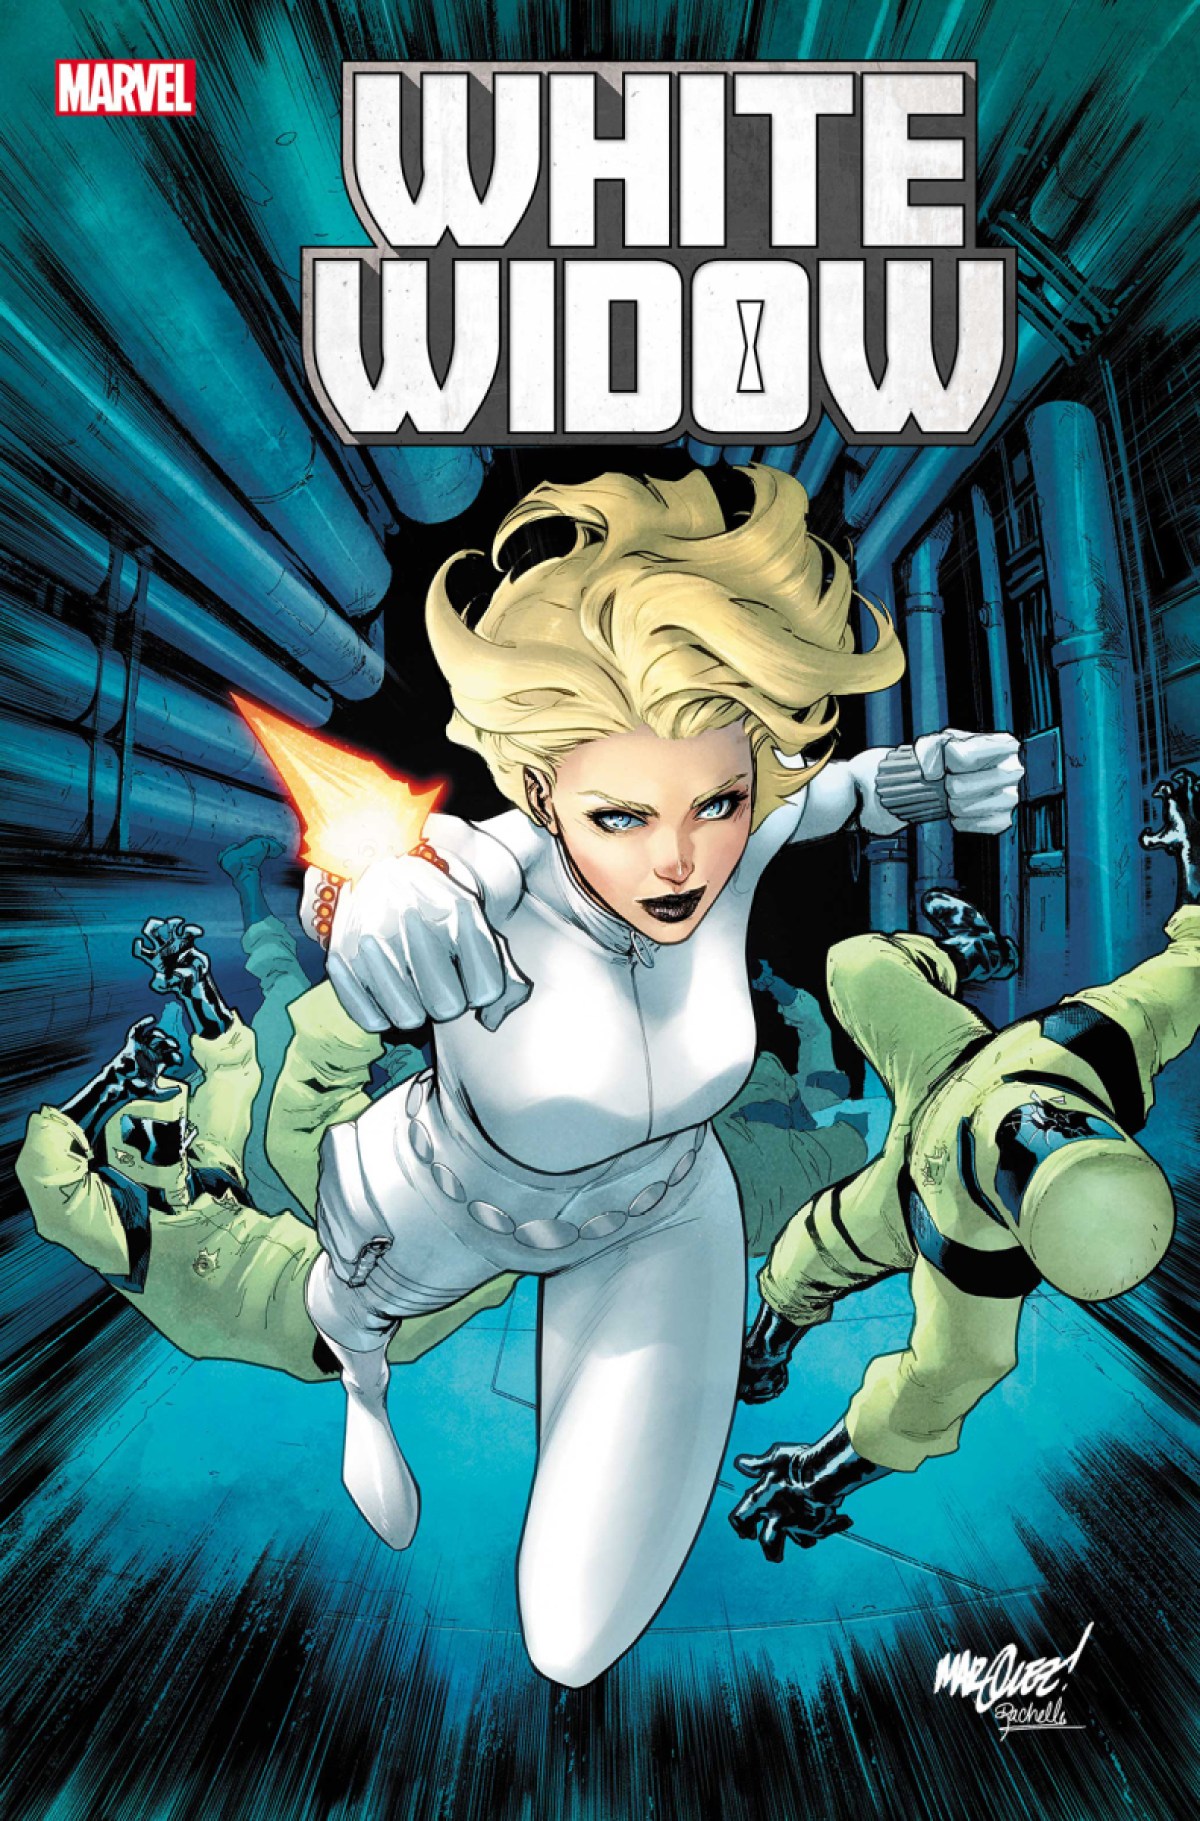 New Yelena Belova Comic called "White Widow" from Marvel